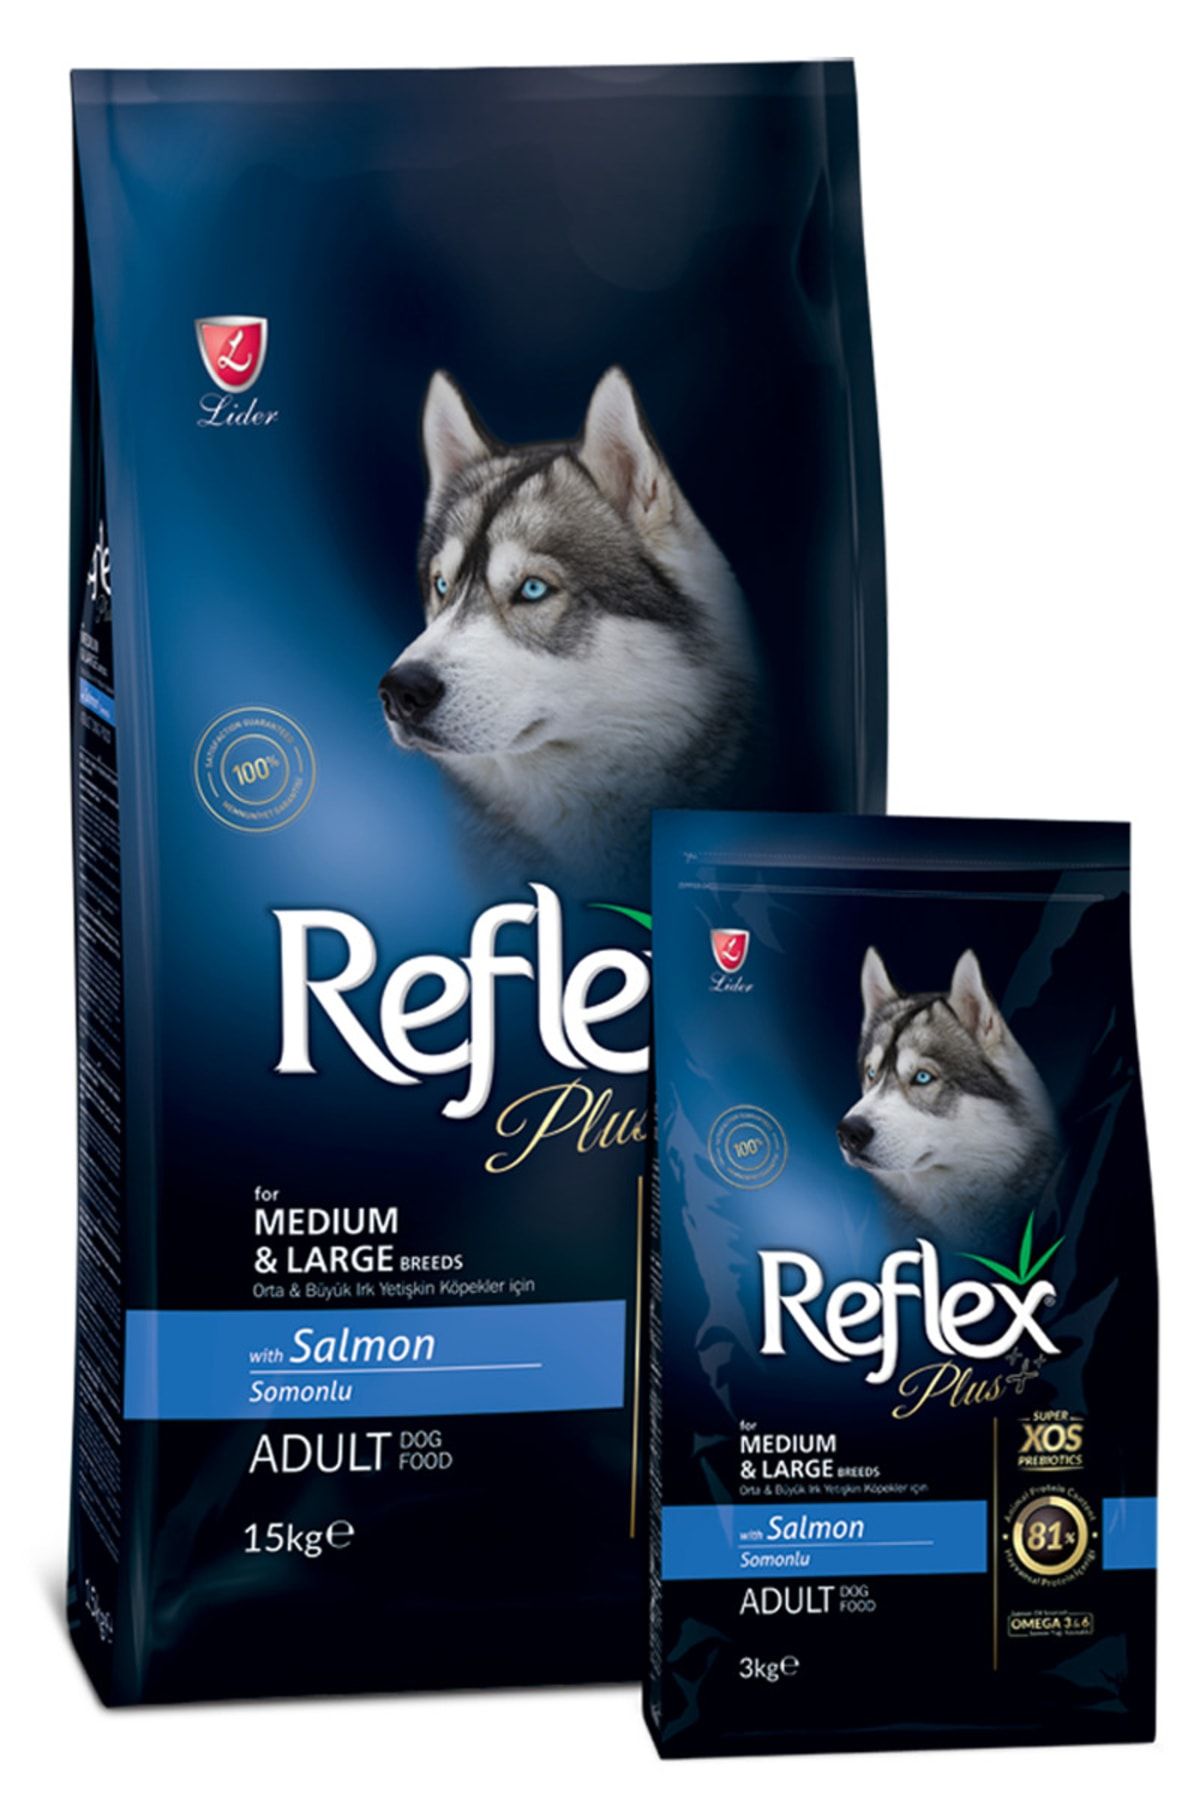 Reflex Plus 15 Kg Somonlu Orta & Büyük Irk Yetişkin Köpek Maması